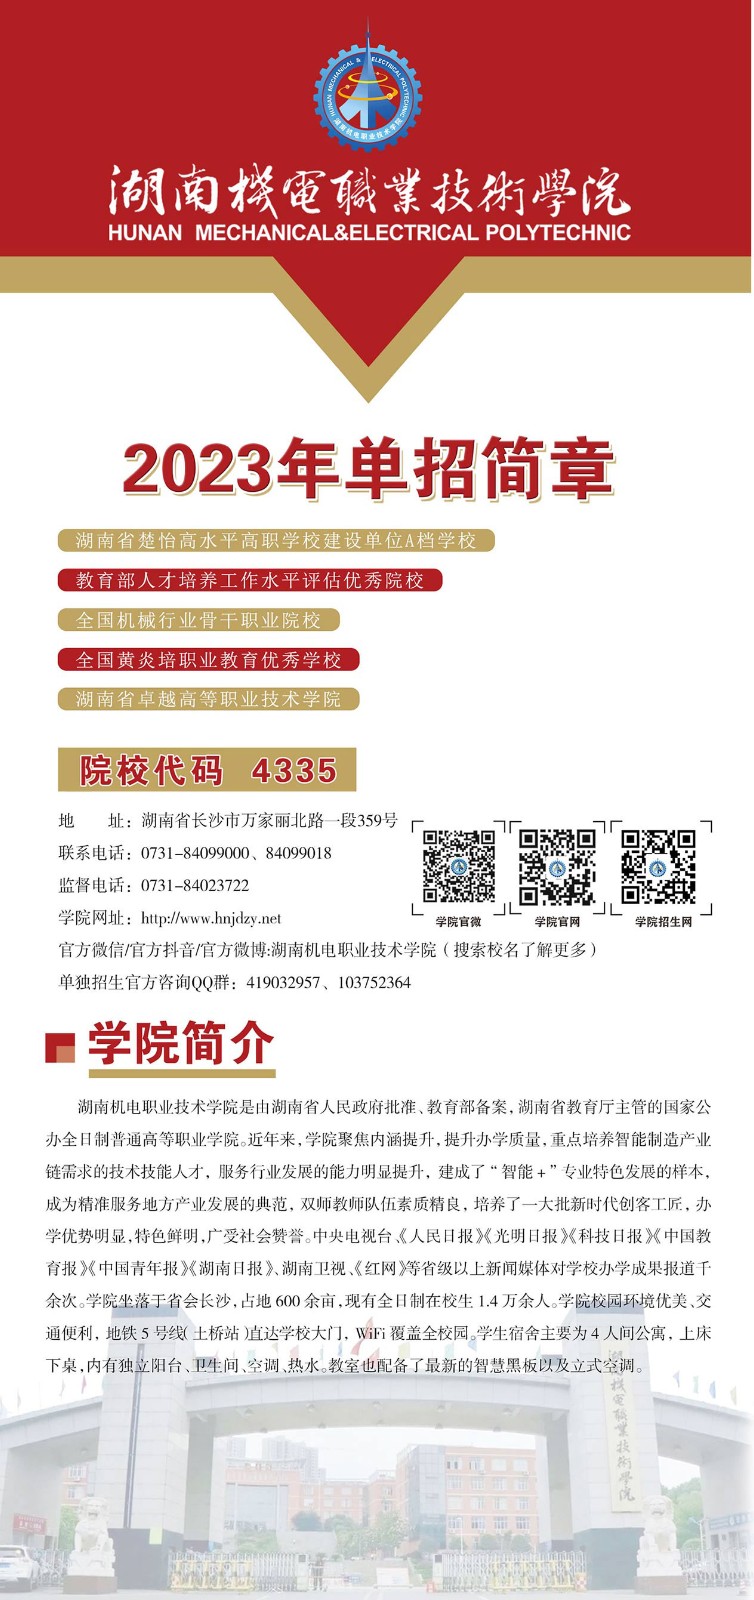 2023年湖南机电职业技术学院单招简章